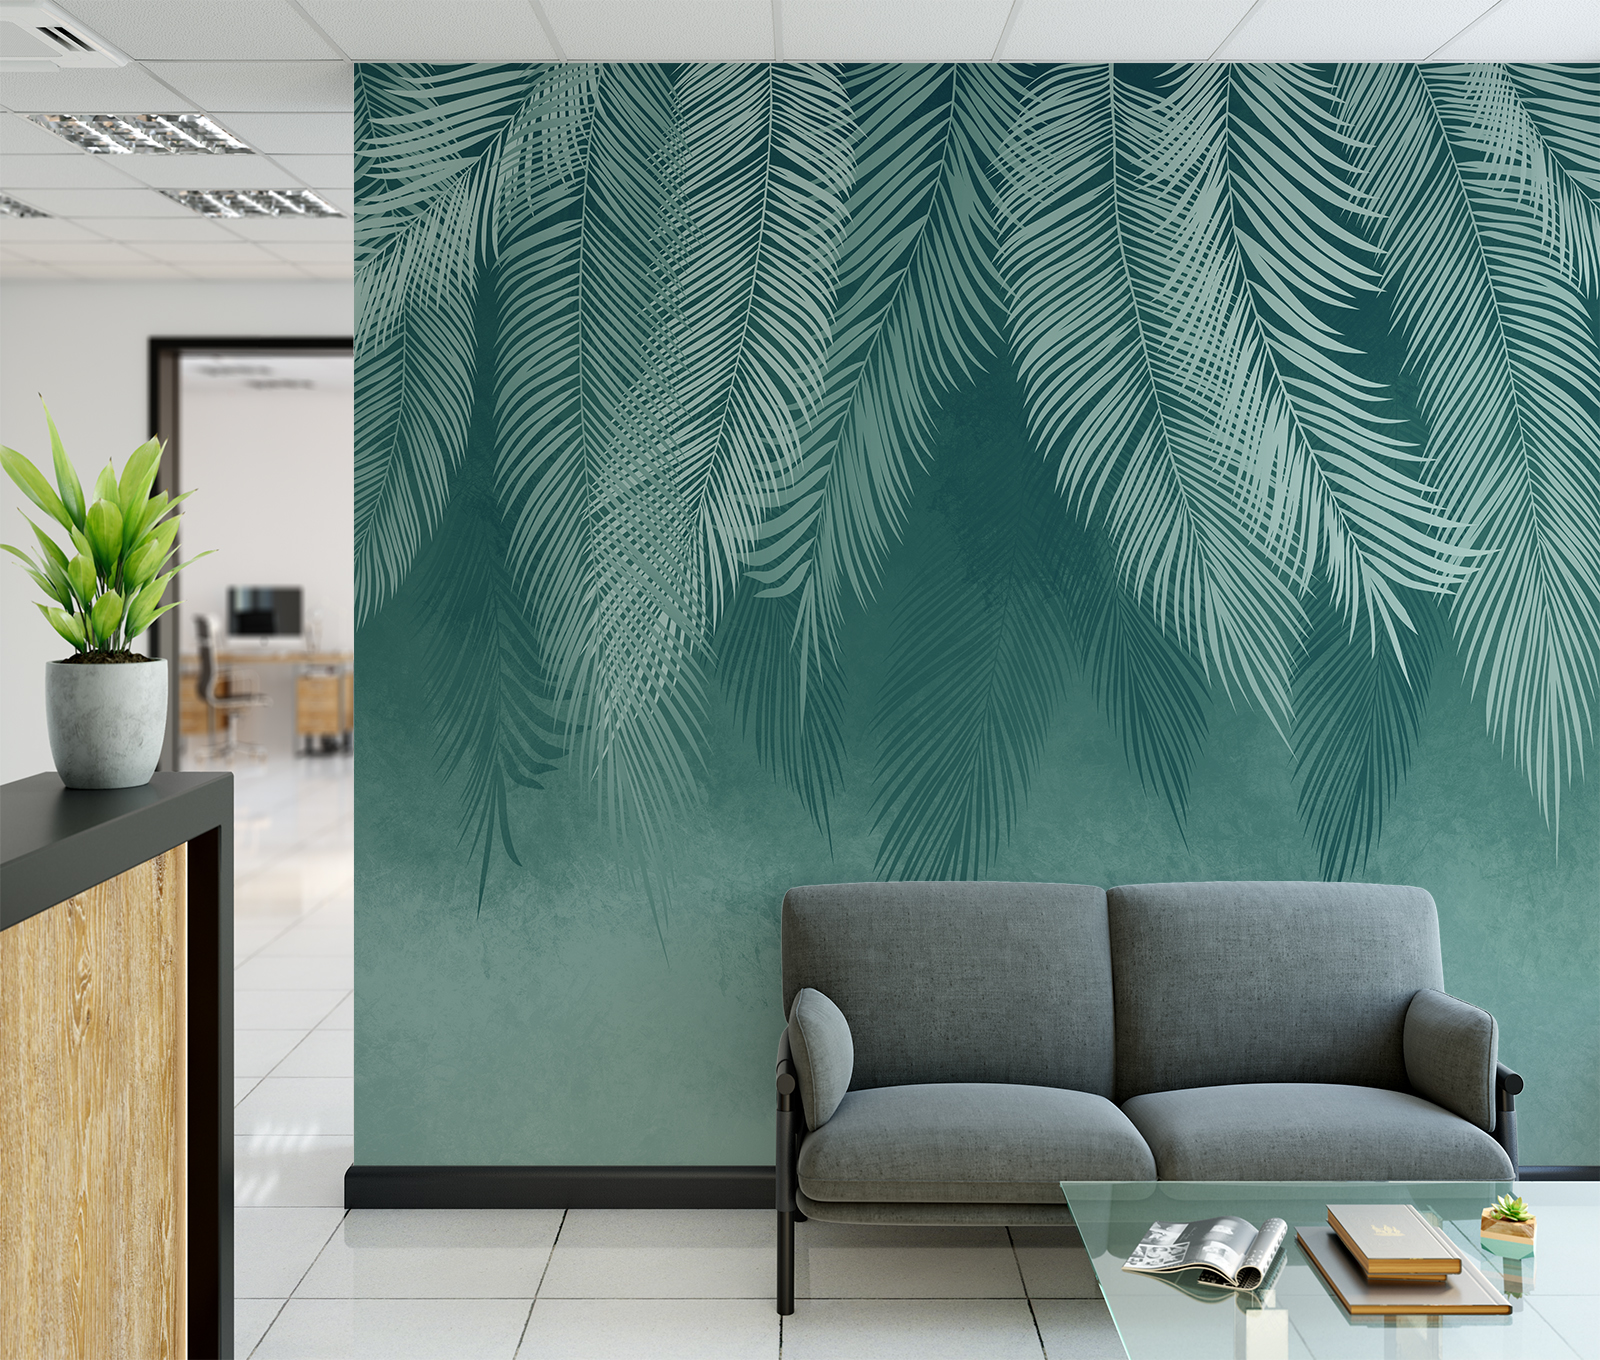 Фотообои Photostena Листья пальмы нежно-зеленые 3 x 2,7 м платок женский 55х55 см полиэстер белый зеленые листья kerchief